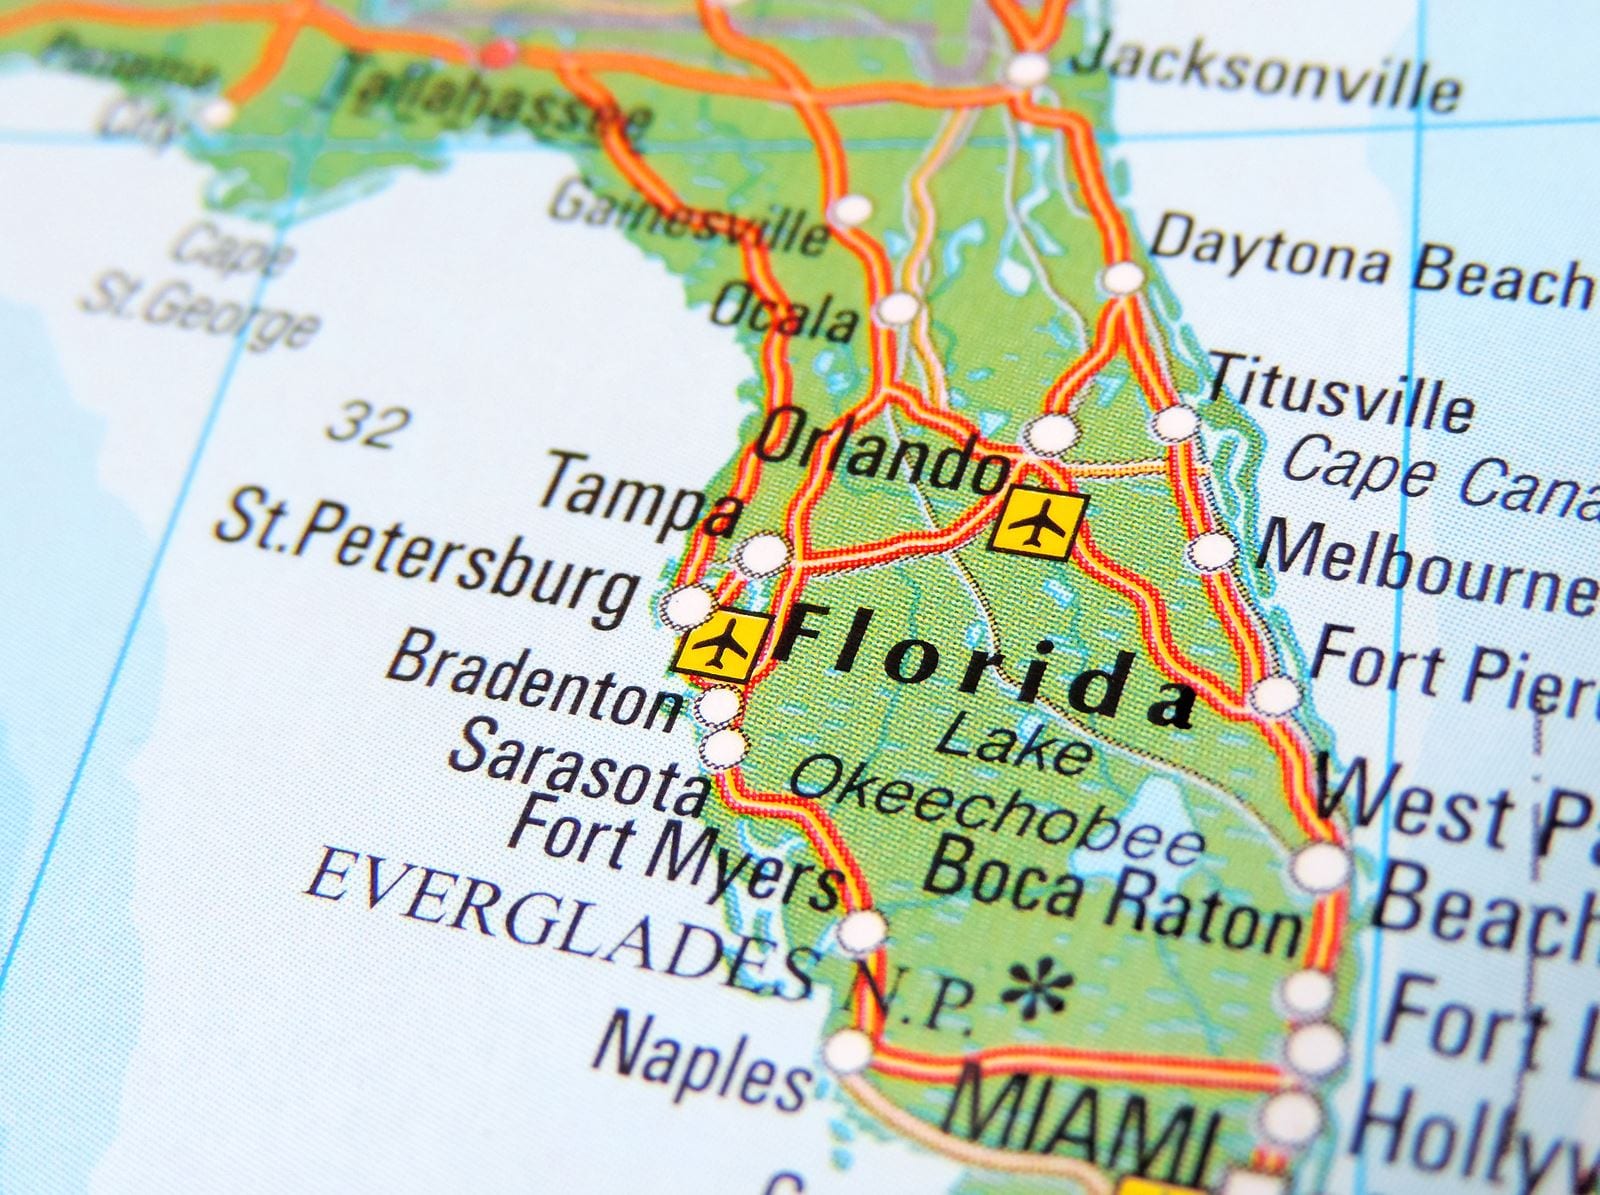 Buying Rental Property in Florida